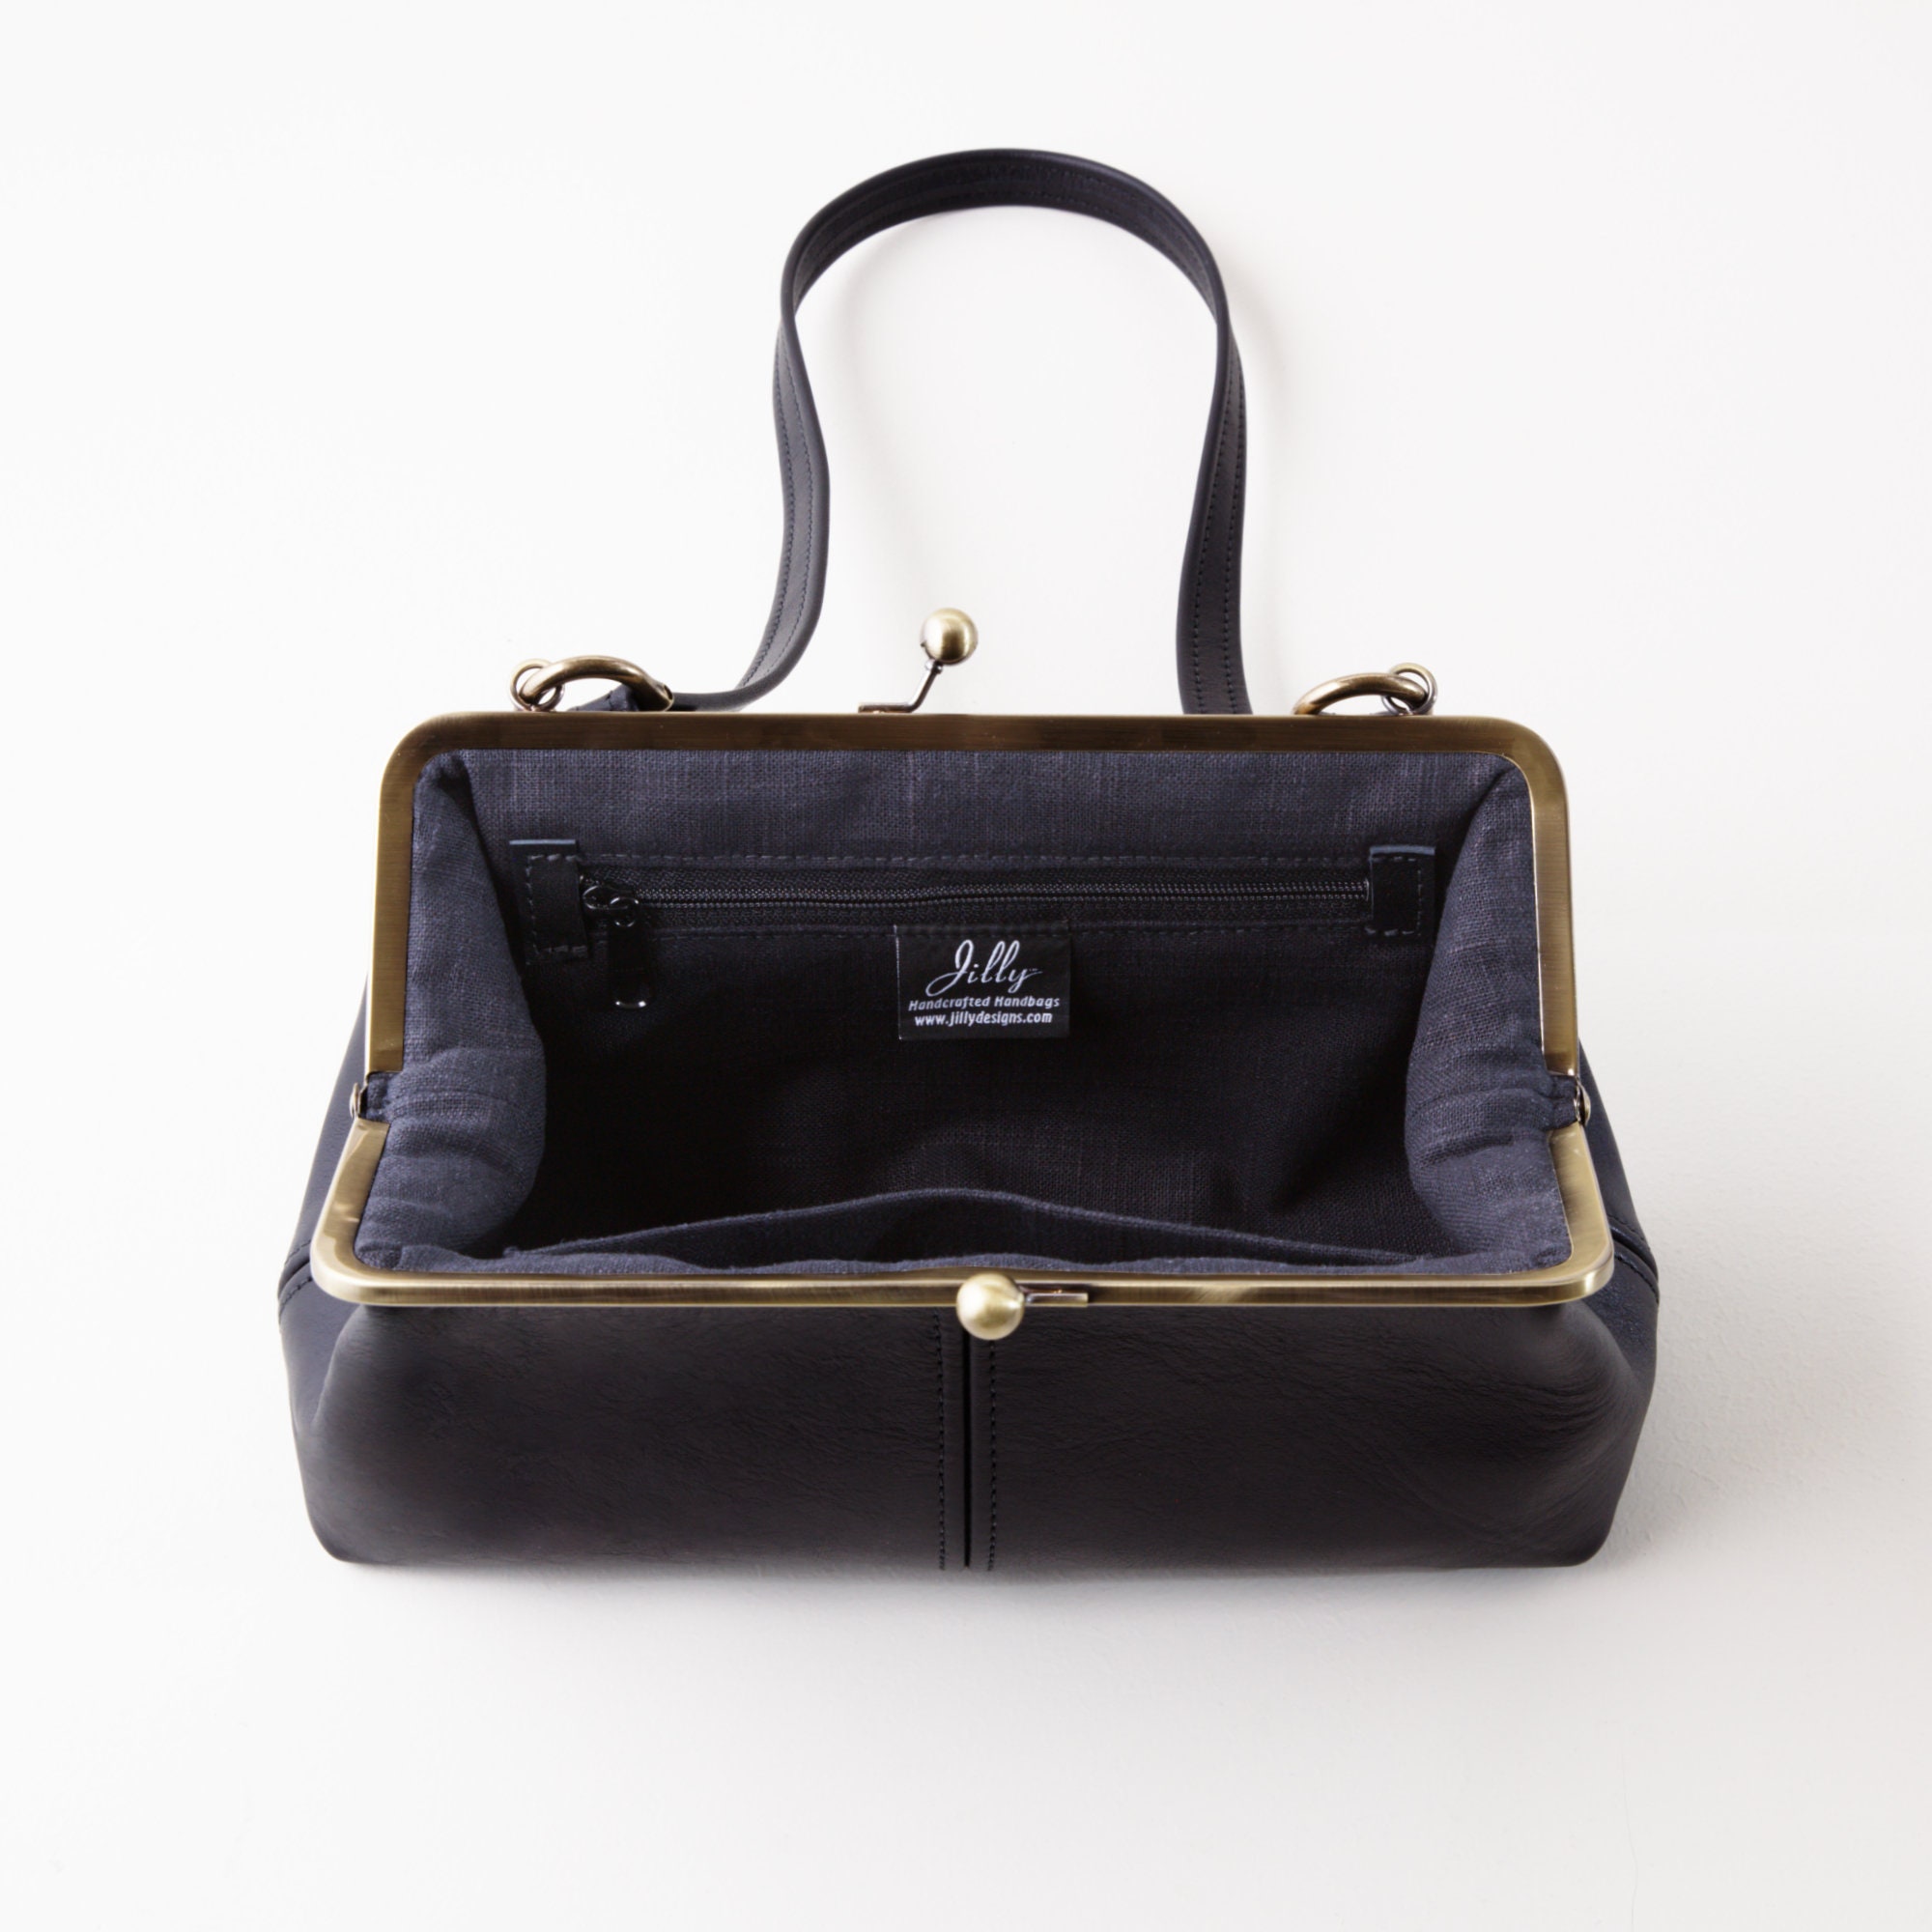 Jilly Designs Handbag Collection | Jilly Designs